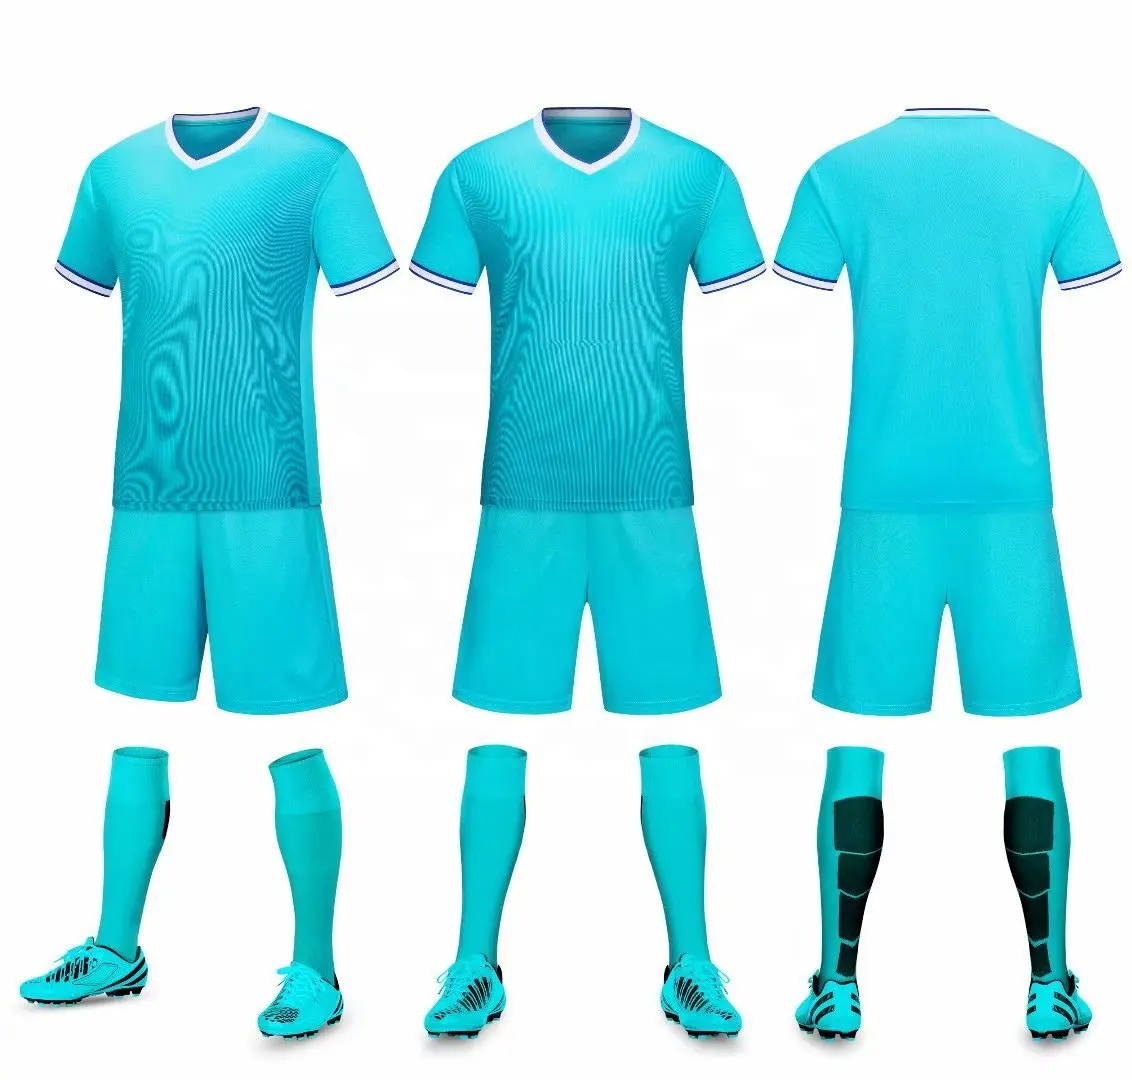 कम Moq कस्टम sublimated पुरुषों फुटबॉल जर्सी सेट फुटबॉल + Wholesales के लिए पहनने फुटबॉल शर्ट जर्सी फुटबॉल वर्दी टीम जर्सी